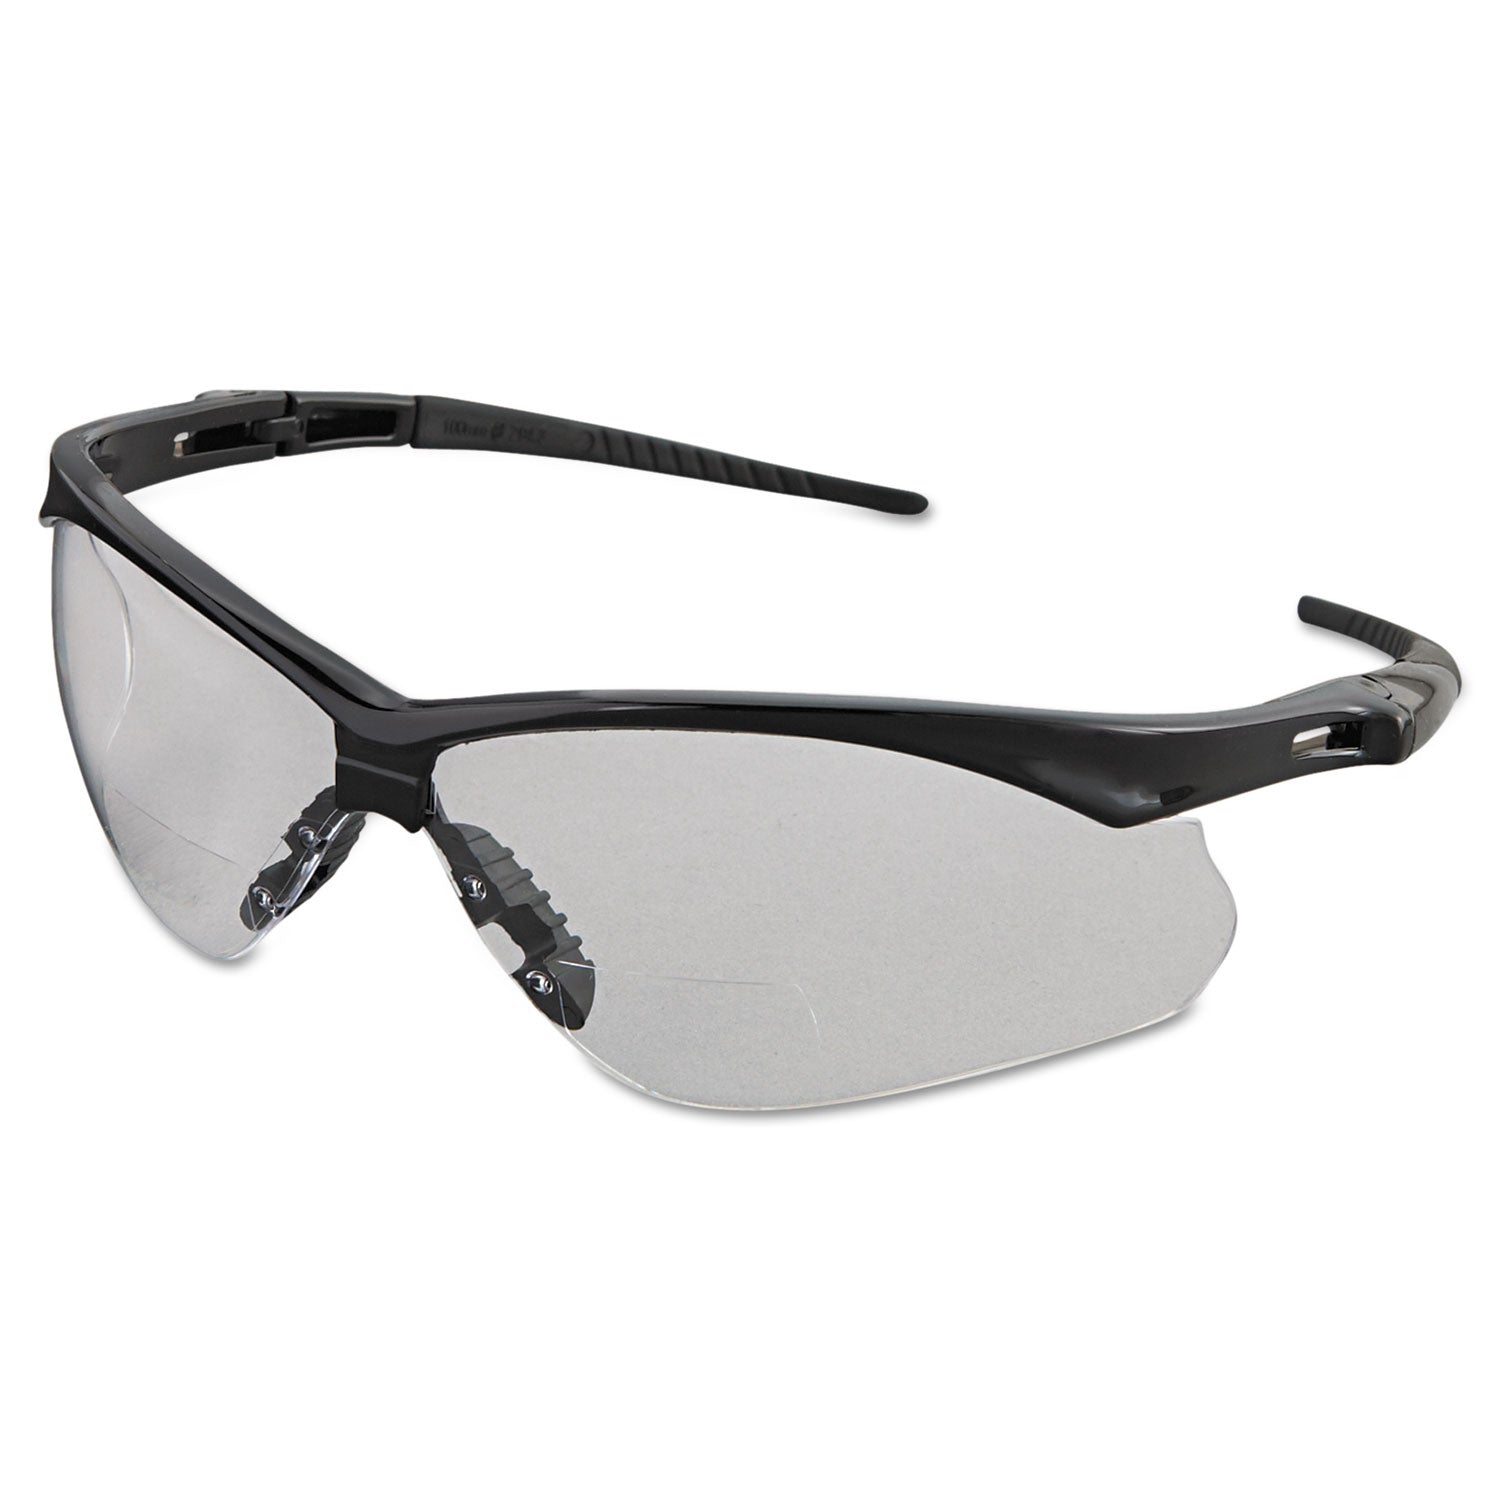 v60-nemesis-rx-reader-safety-glasses-black-frame-clear-lens-+25-diopter-strength_kcc28627 - 1